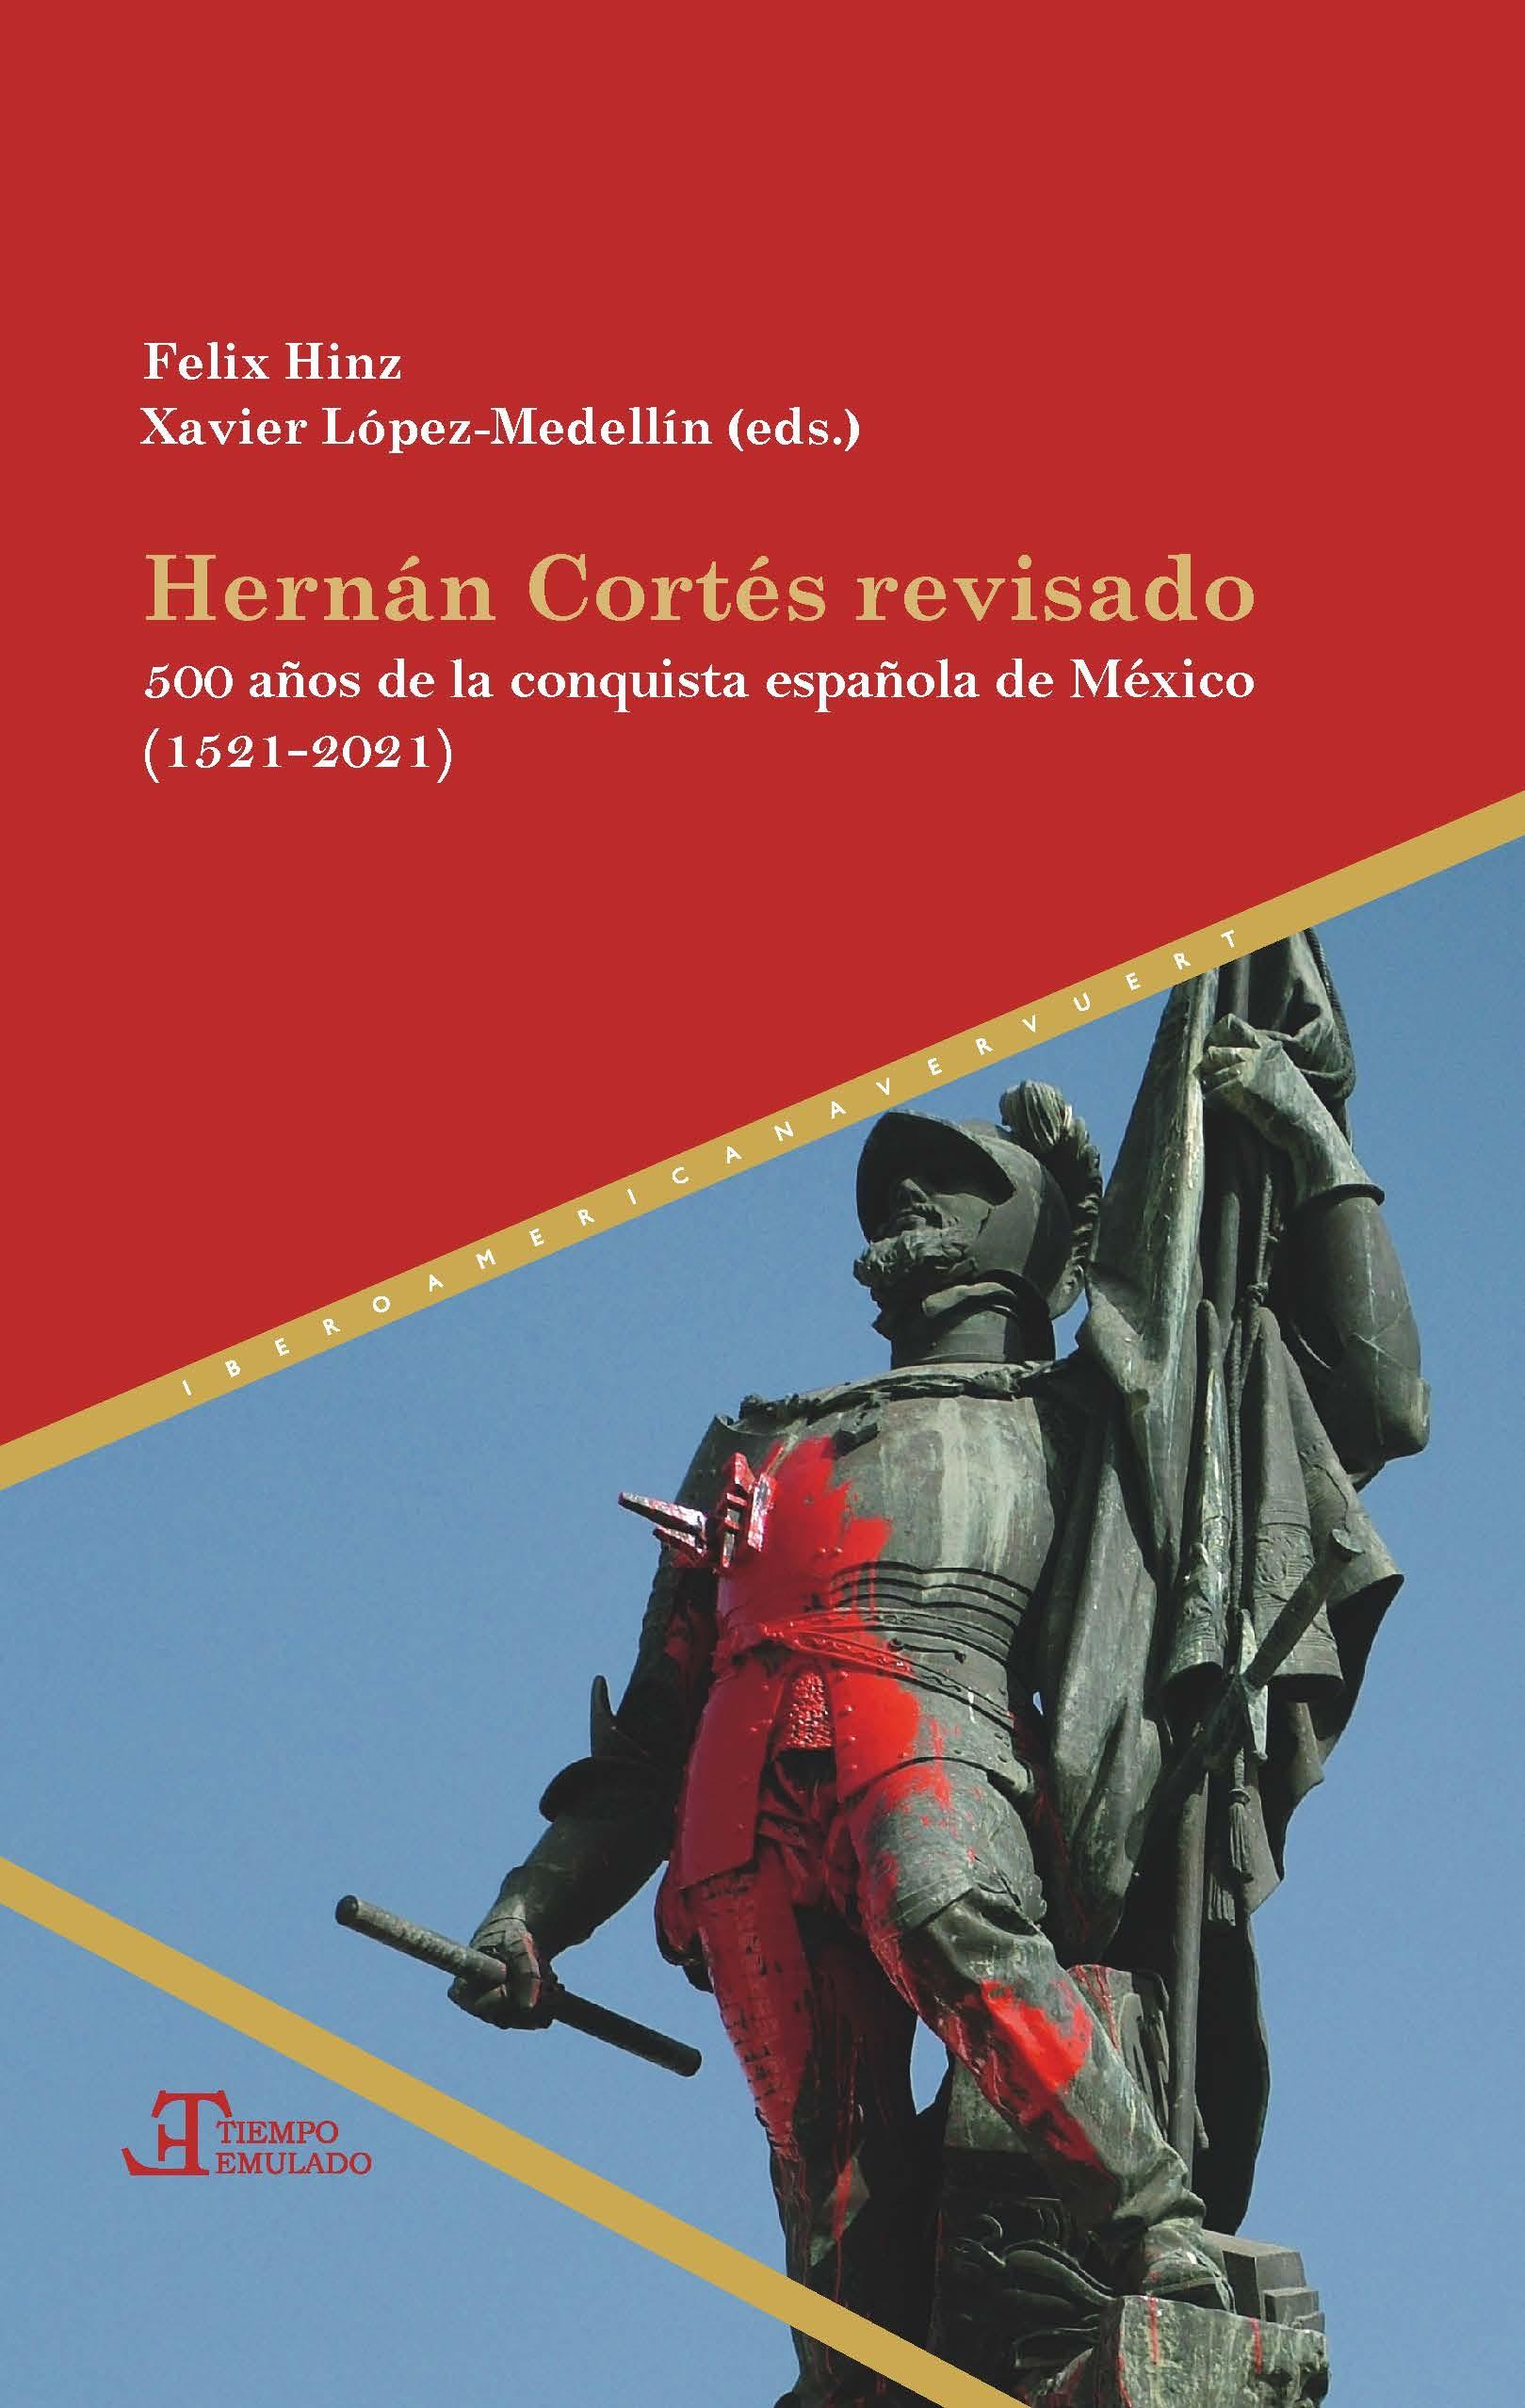 HERNAN CORTES REVISADO "500 AÑOS DE LA CONQUISTA ESPAÑOLA DE MEXICO (1521-2021)"